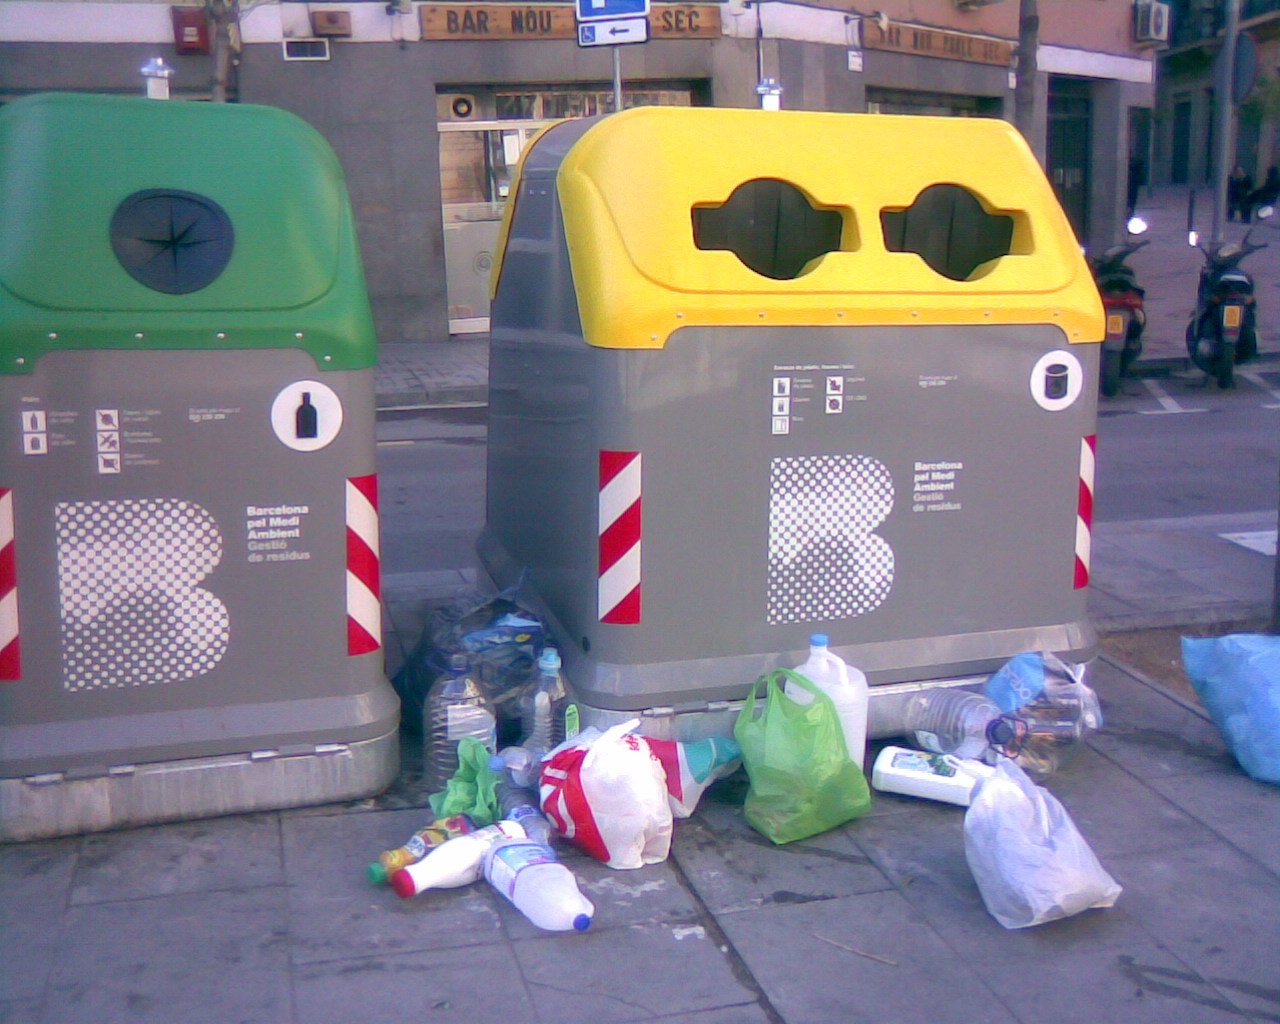 Barcelona es buena, si la basura suena.